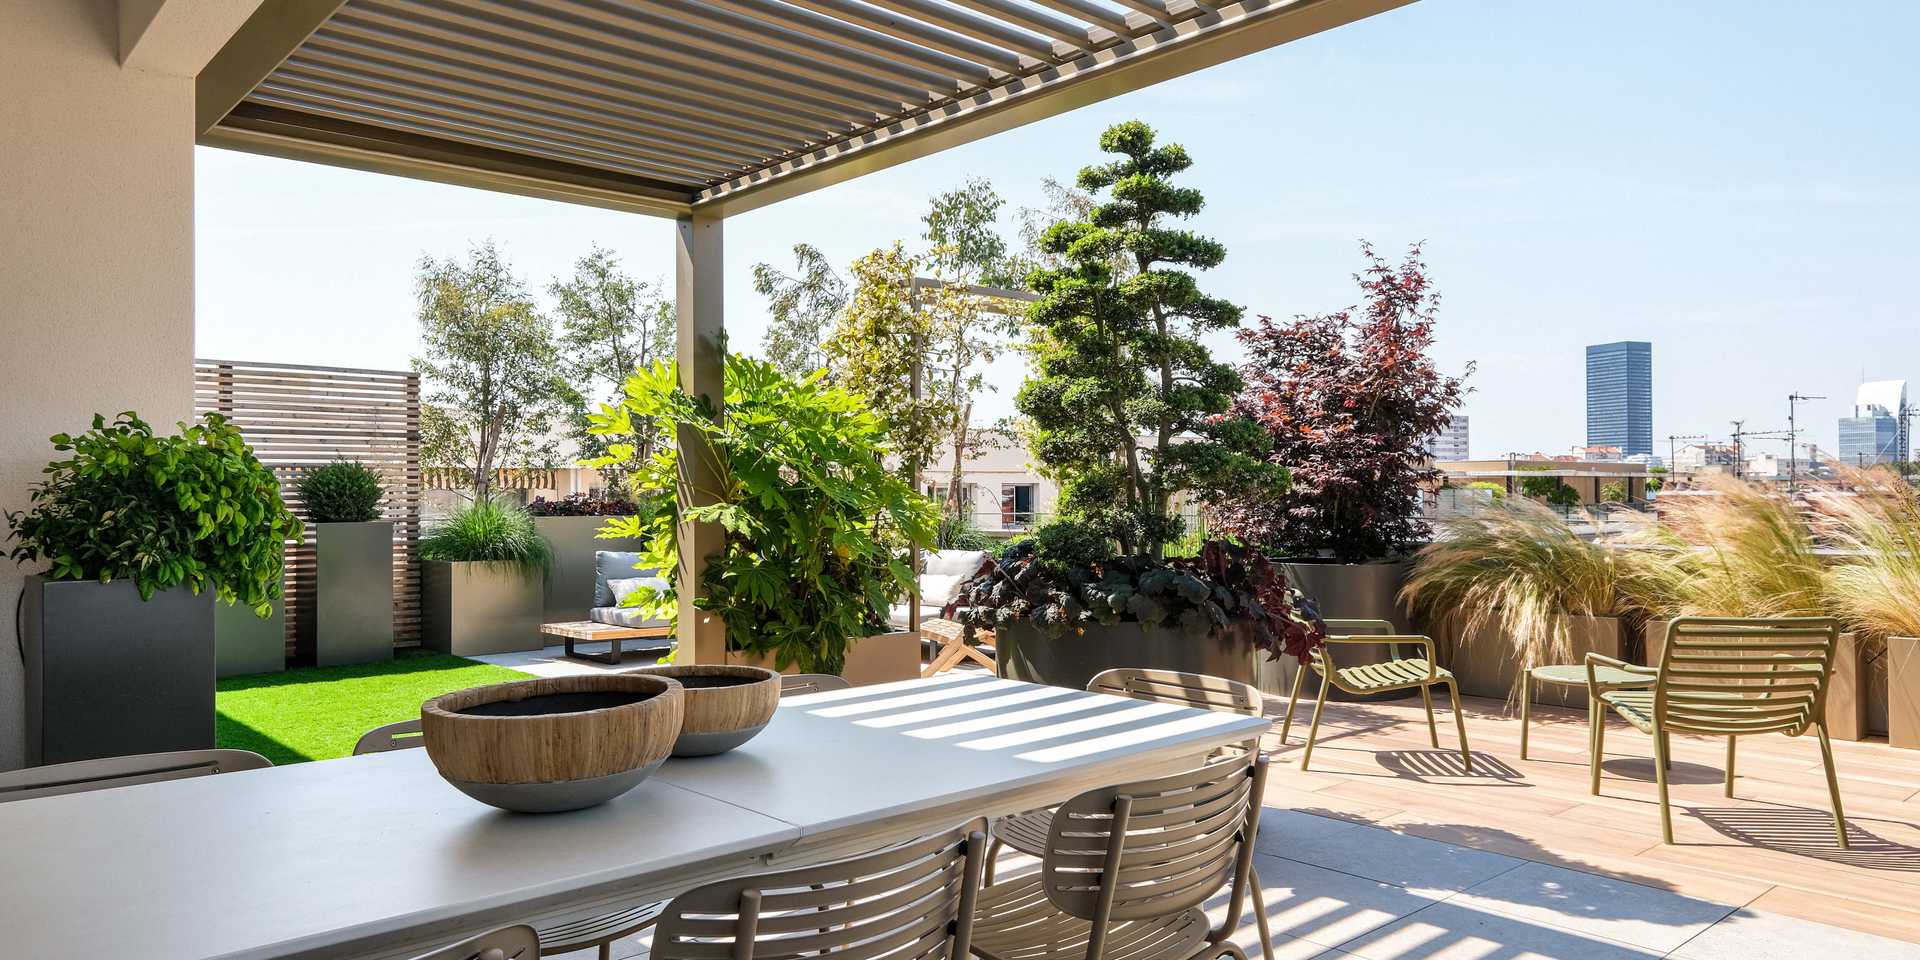 Création de la terrasse d'un appartement à Toulouse par un jardinier paysagiste